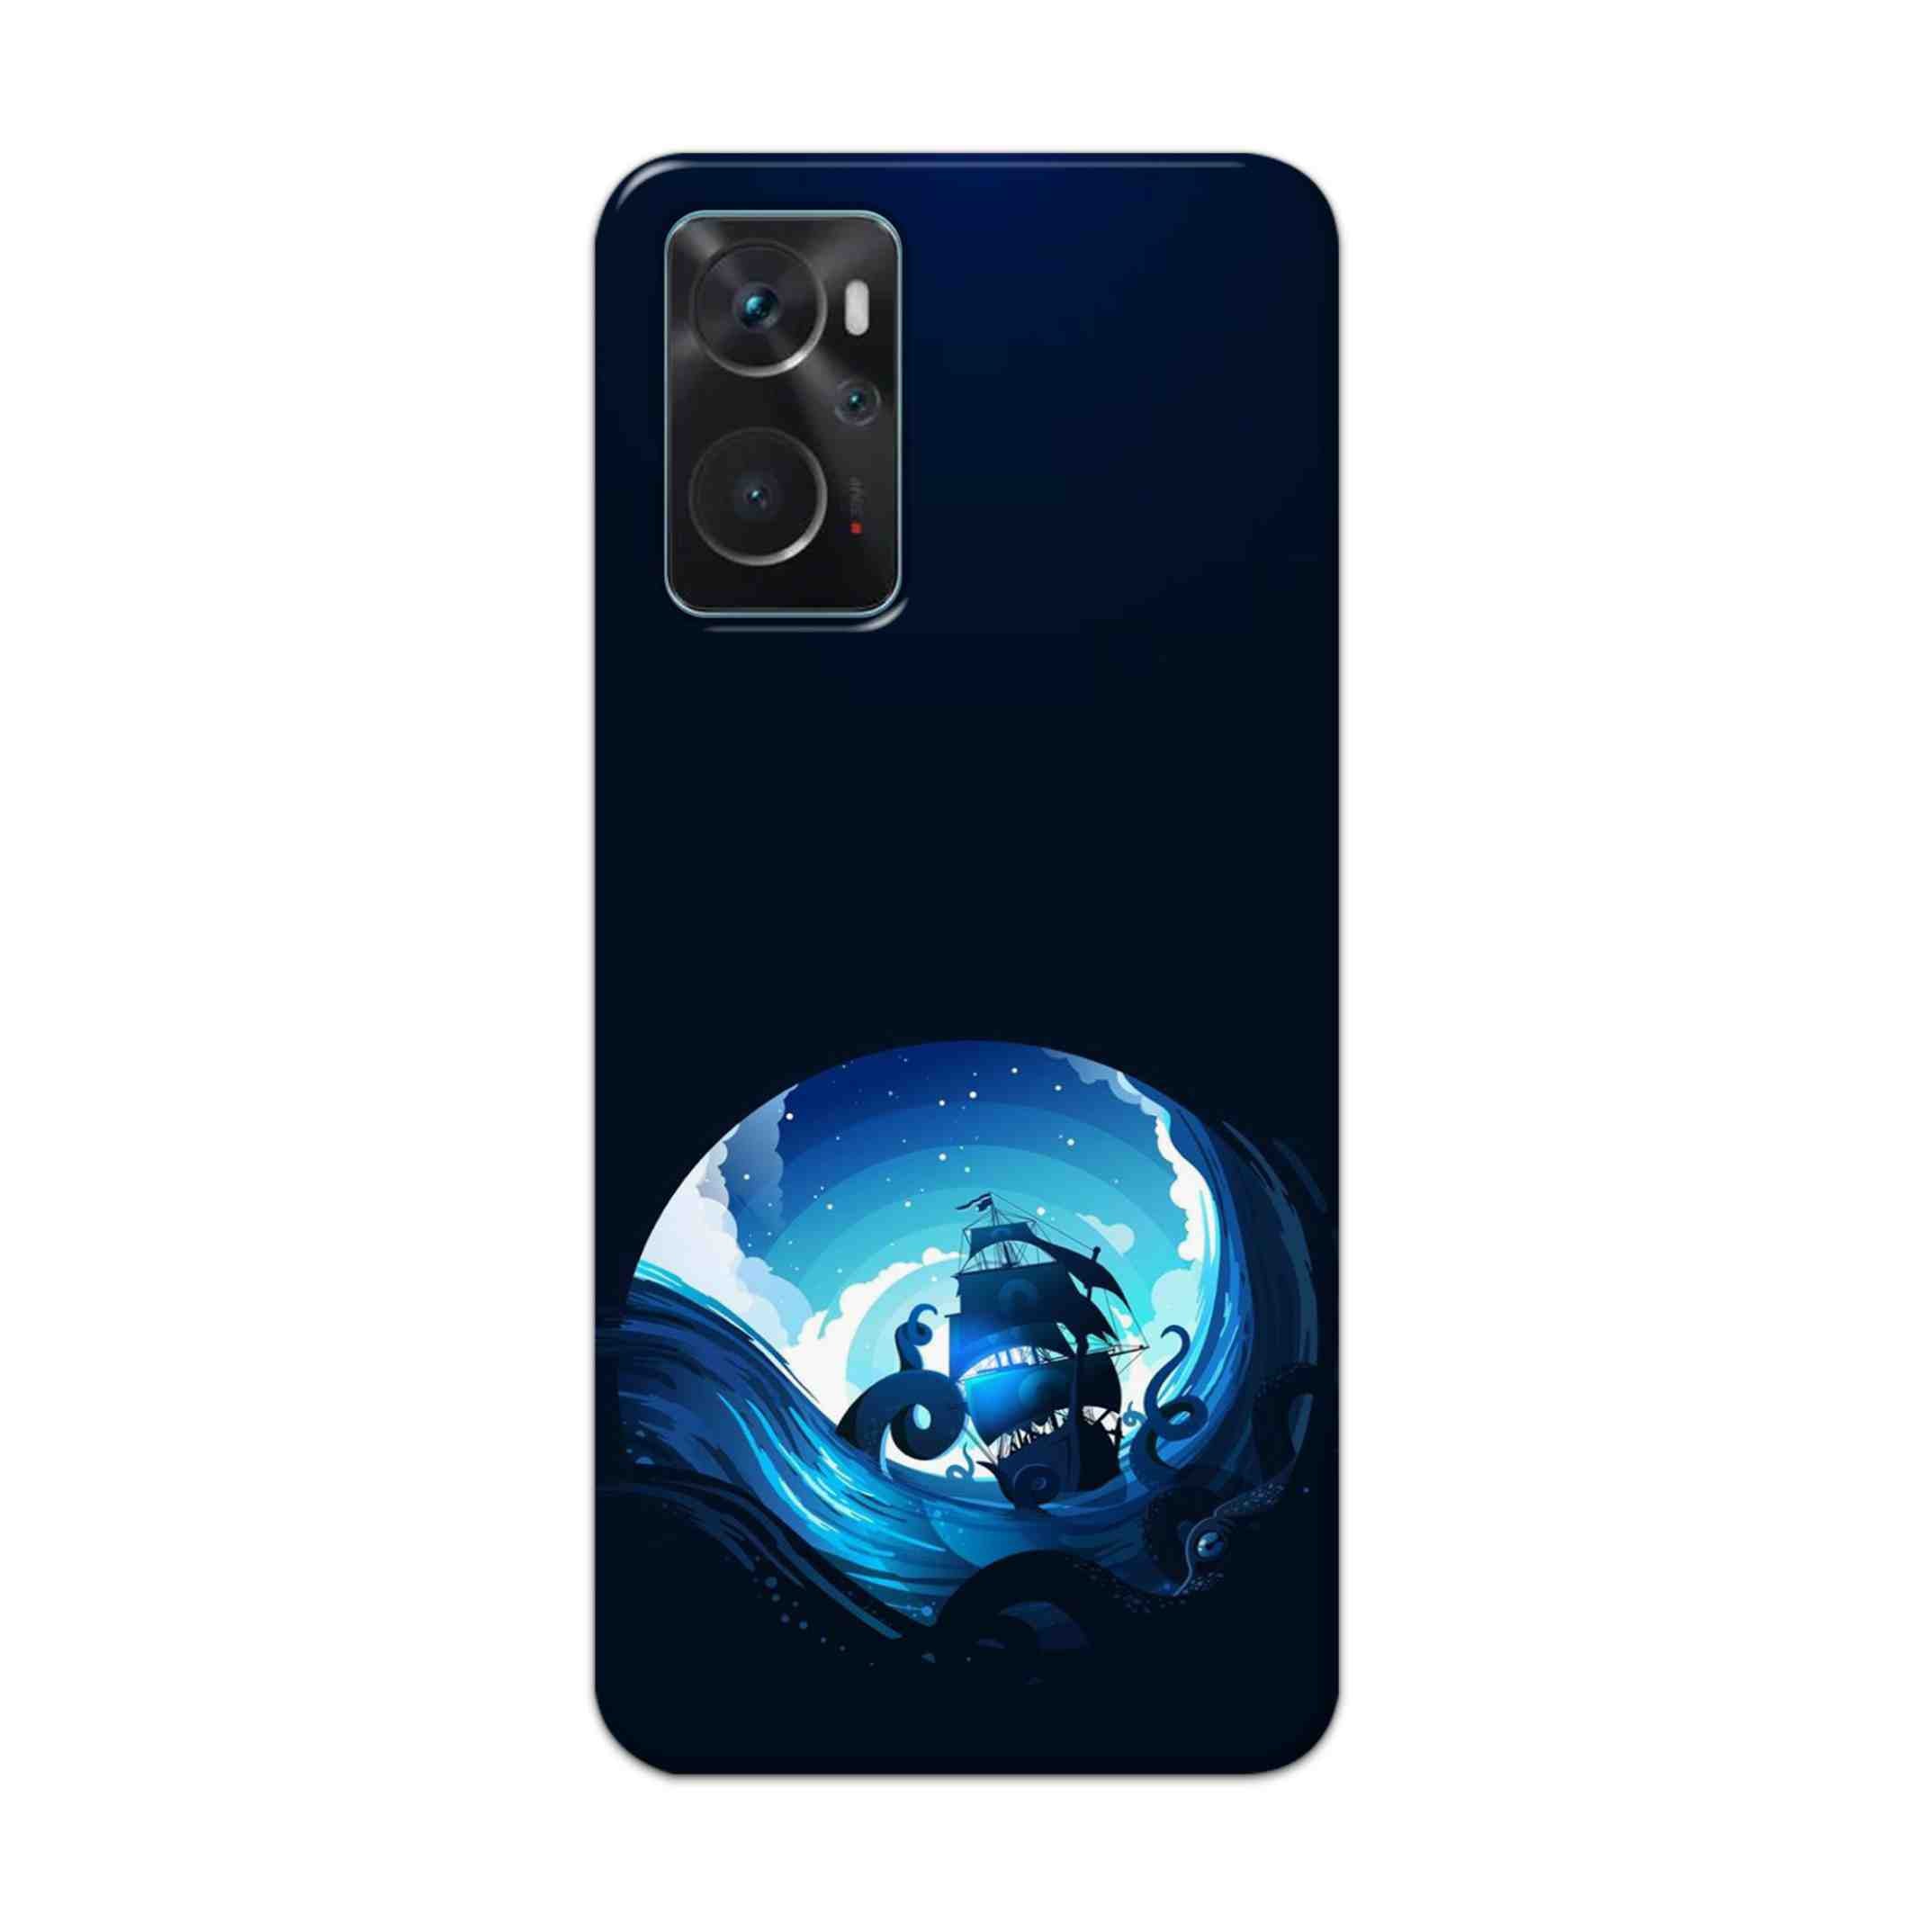 Buy Blue Sea Ship Hard Back Mobile Phone Case Cover For Oppo K10 Online